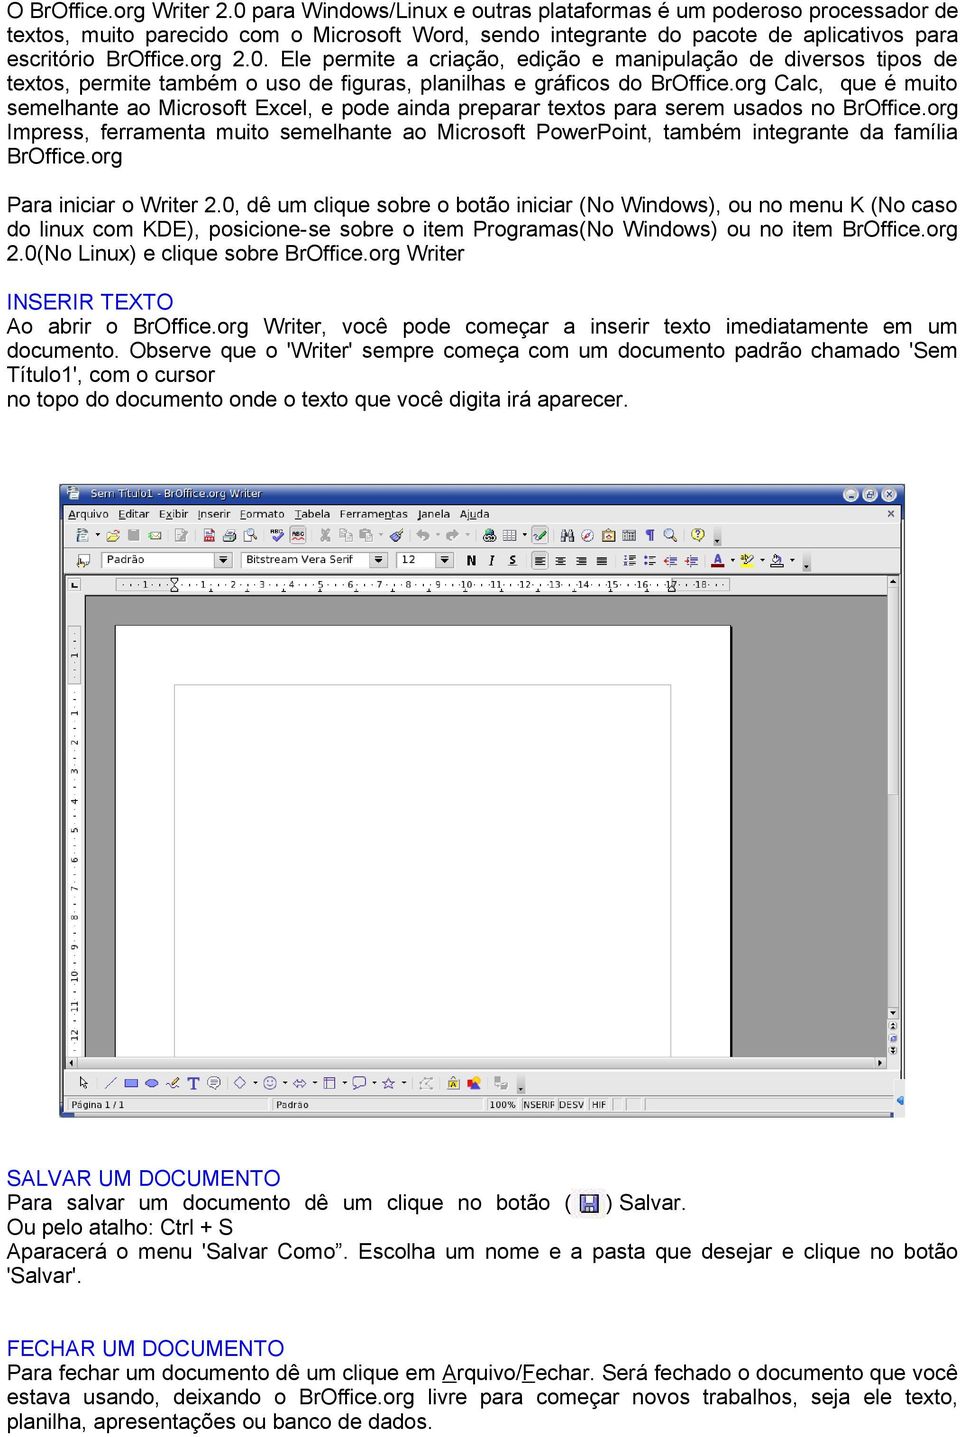 org Calc, que é muito semelhante ao Microsoft Excel, e pode ainda preparar textos para serem usados no BrOffice.